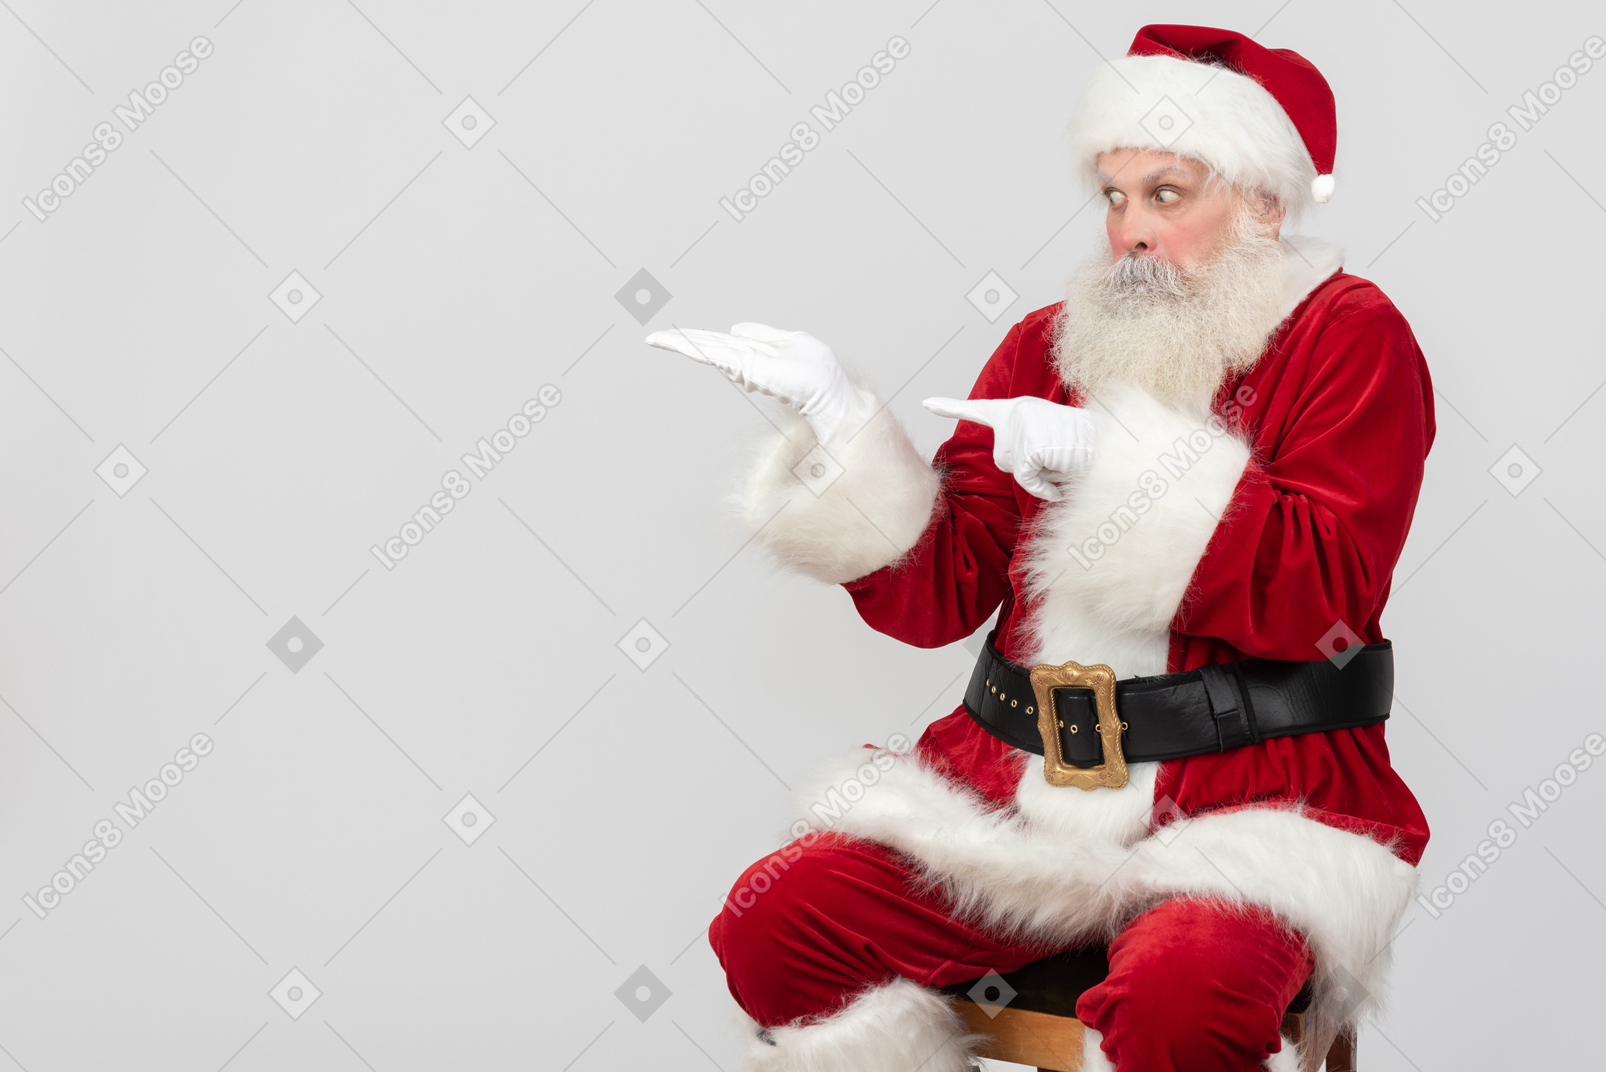 Weihnachtsmann im dienst